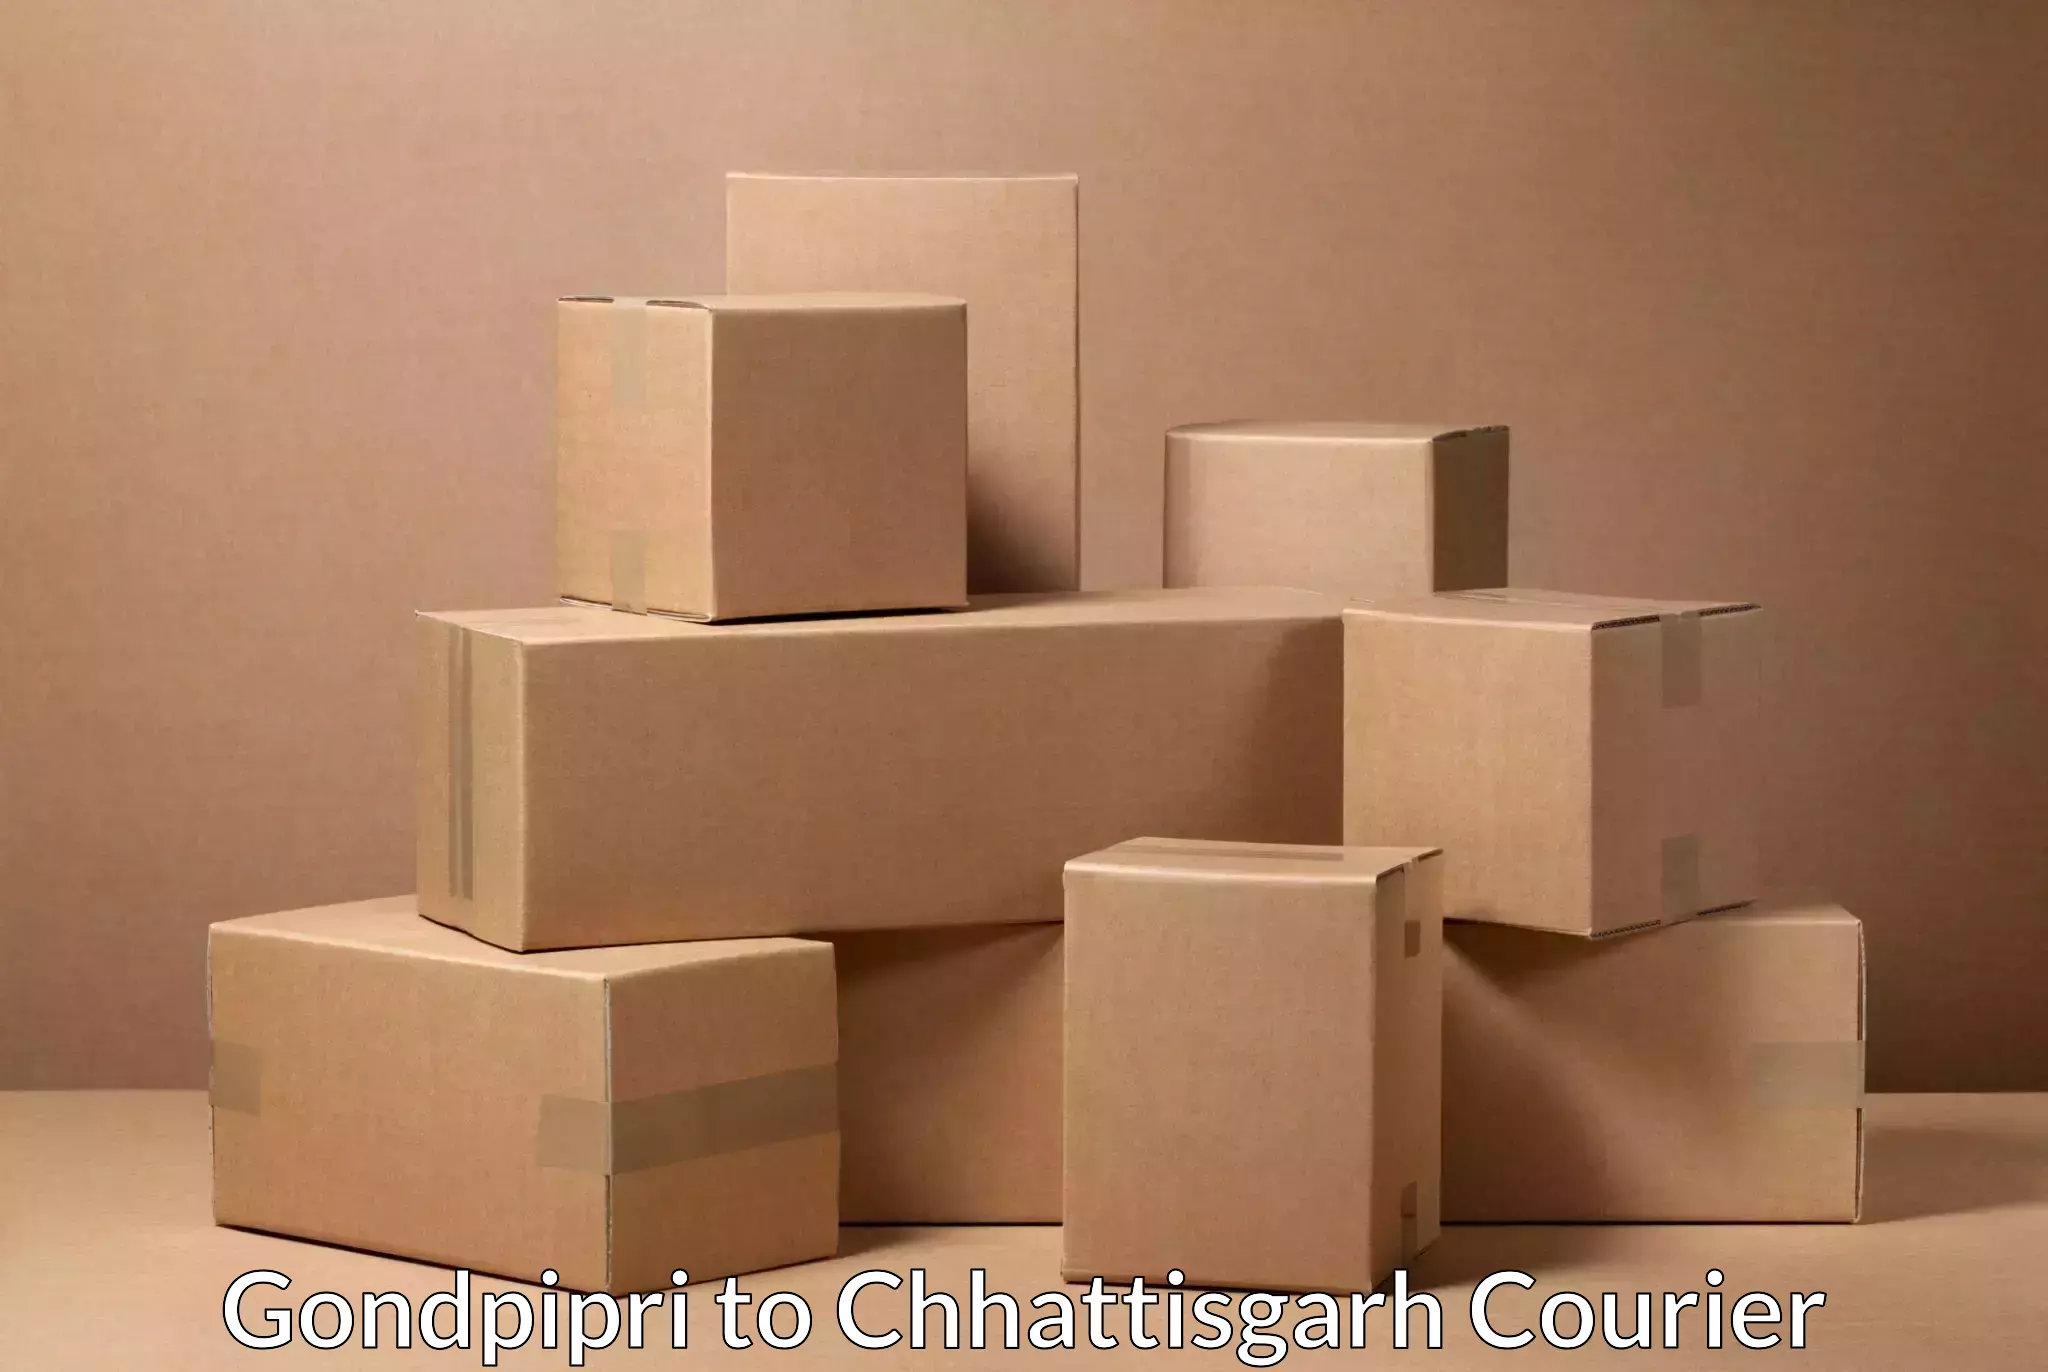 Punctual parcel services Gondpipri to Chhattisgarh